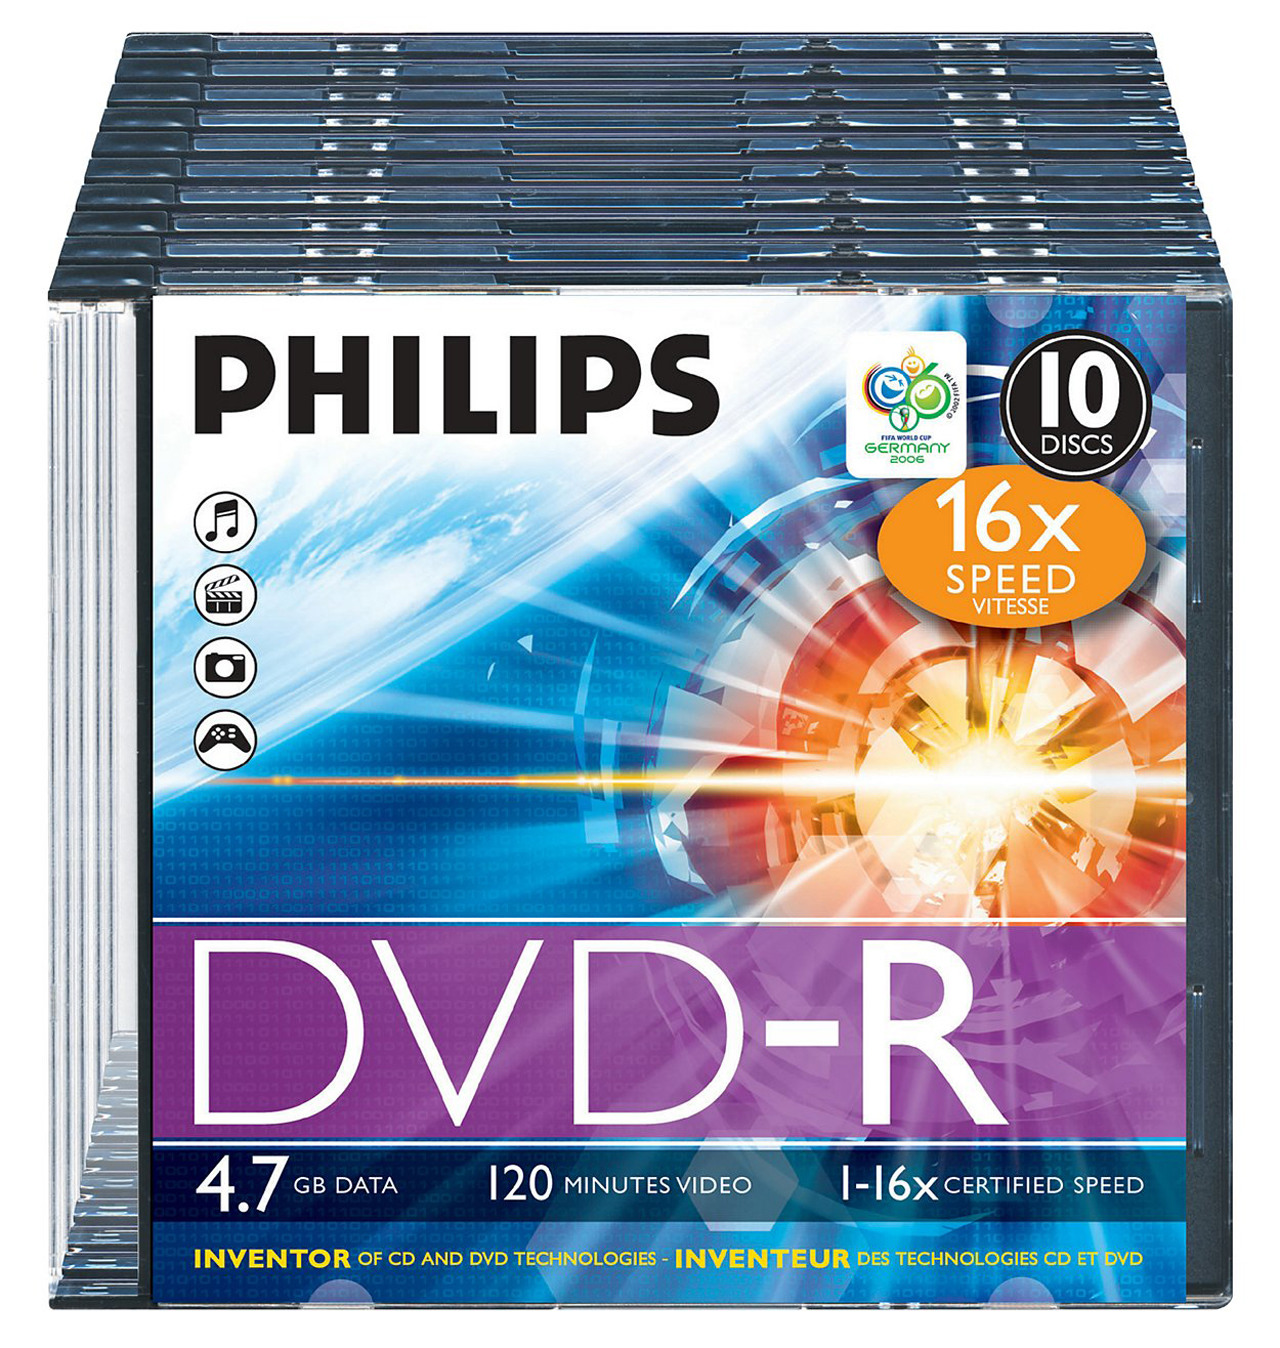 PHILIPS DVD-R DM4S6S10F 10er Slim Case